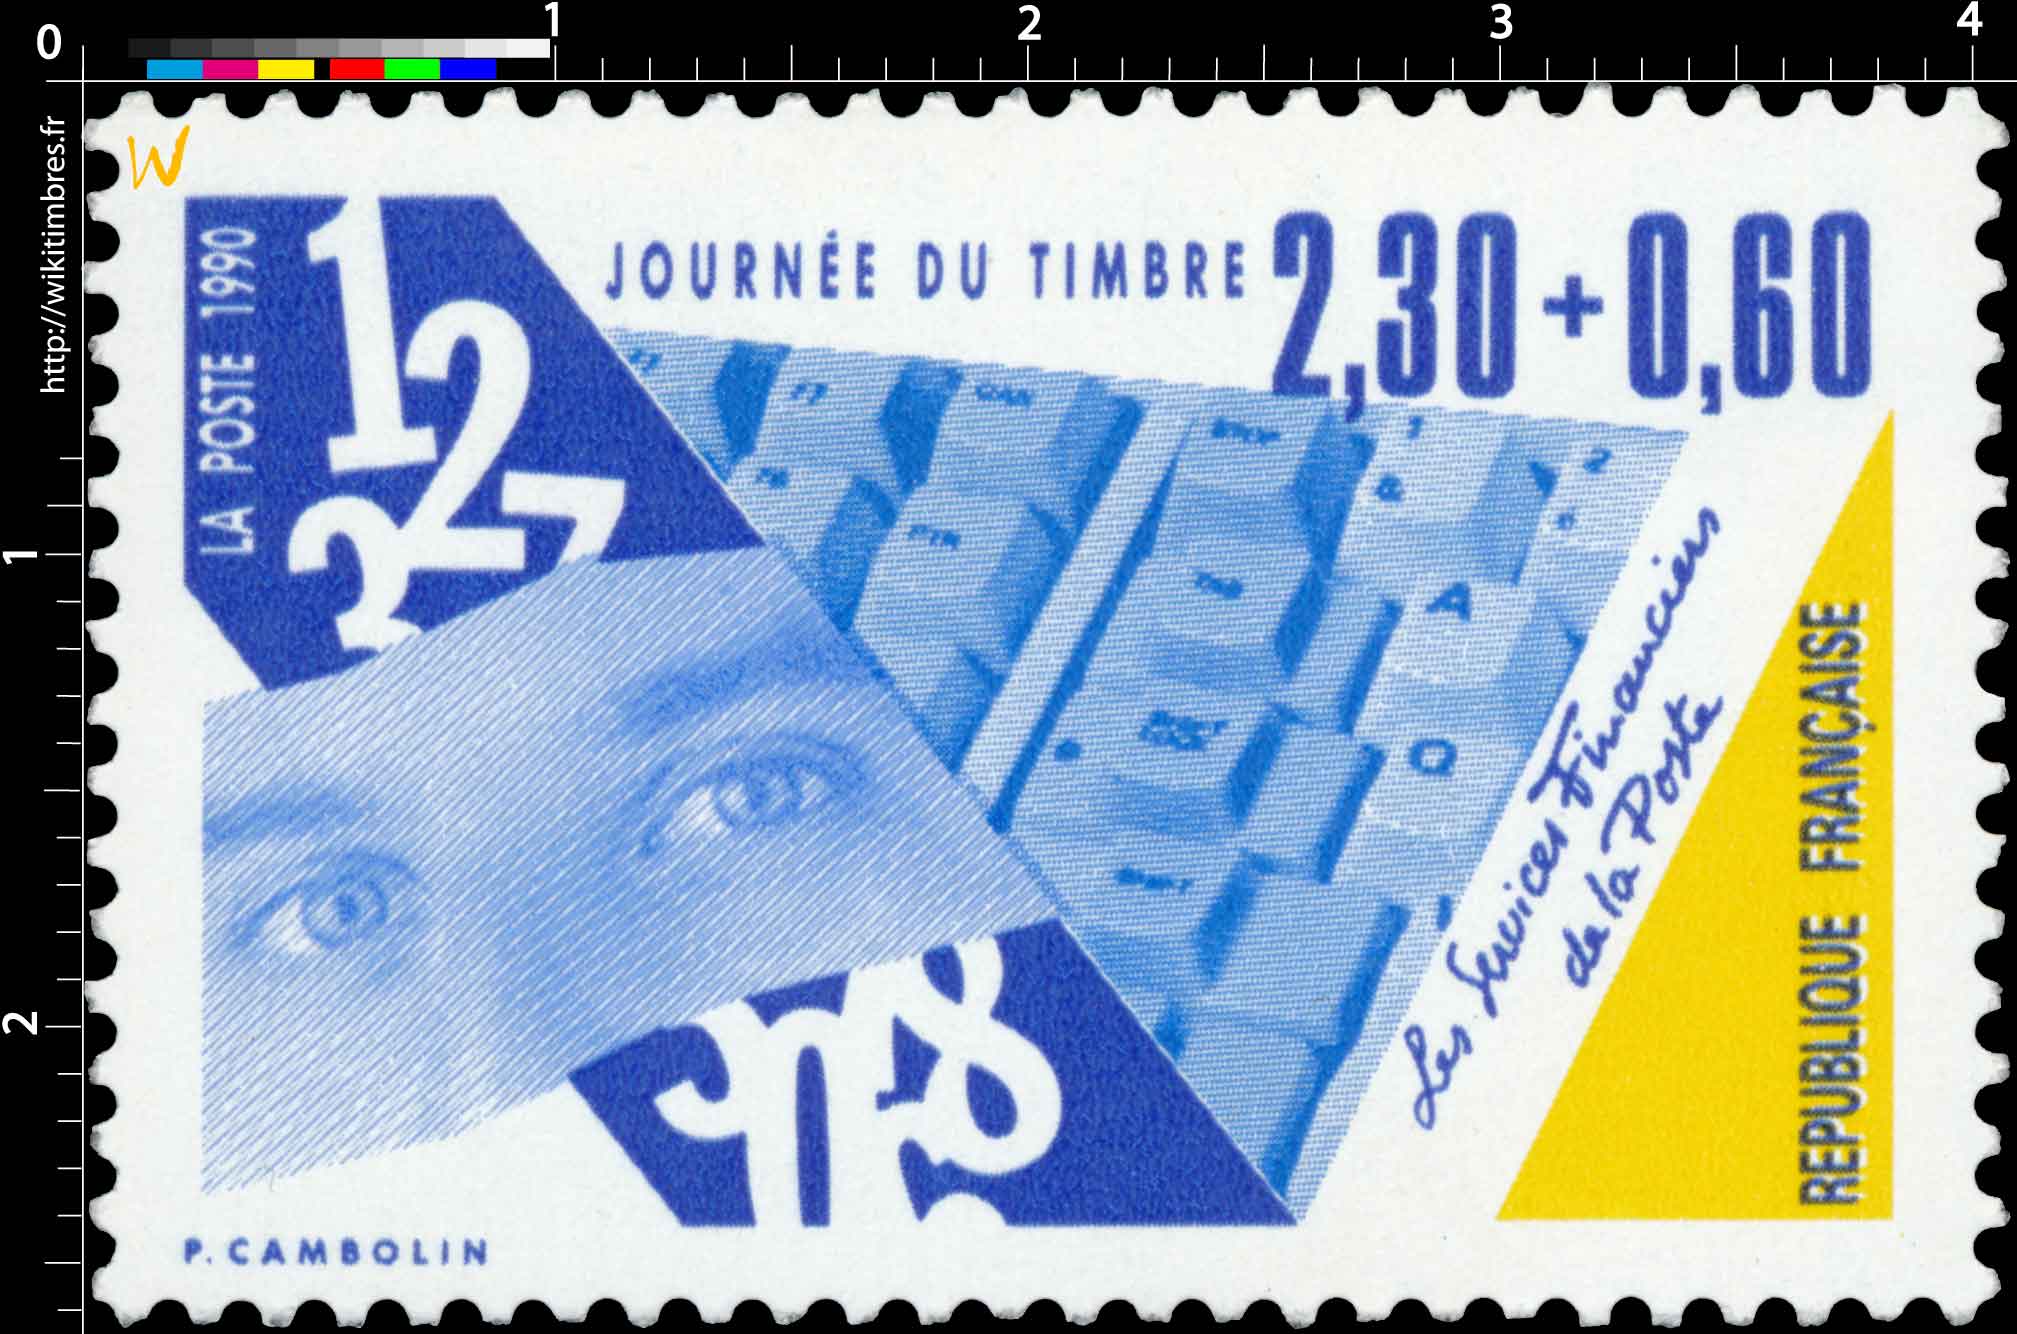 1990 JOURNÉE DU TIMBRE Les Services Financiers de la Poste